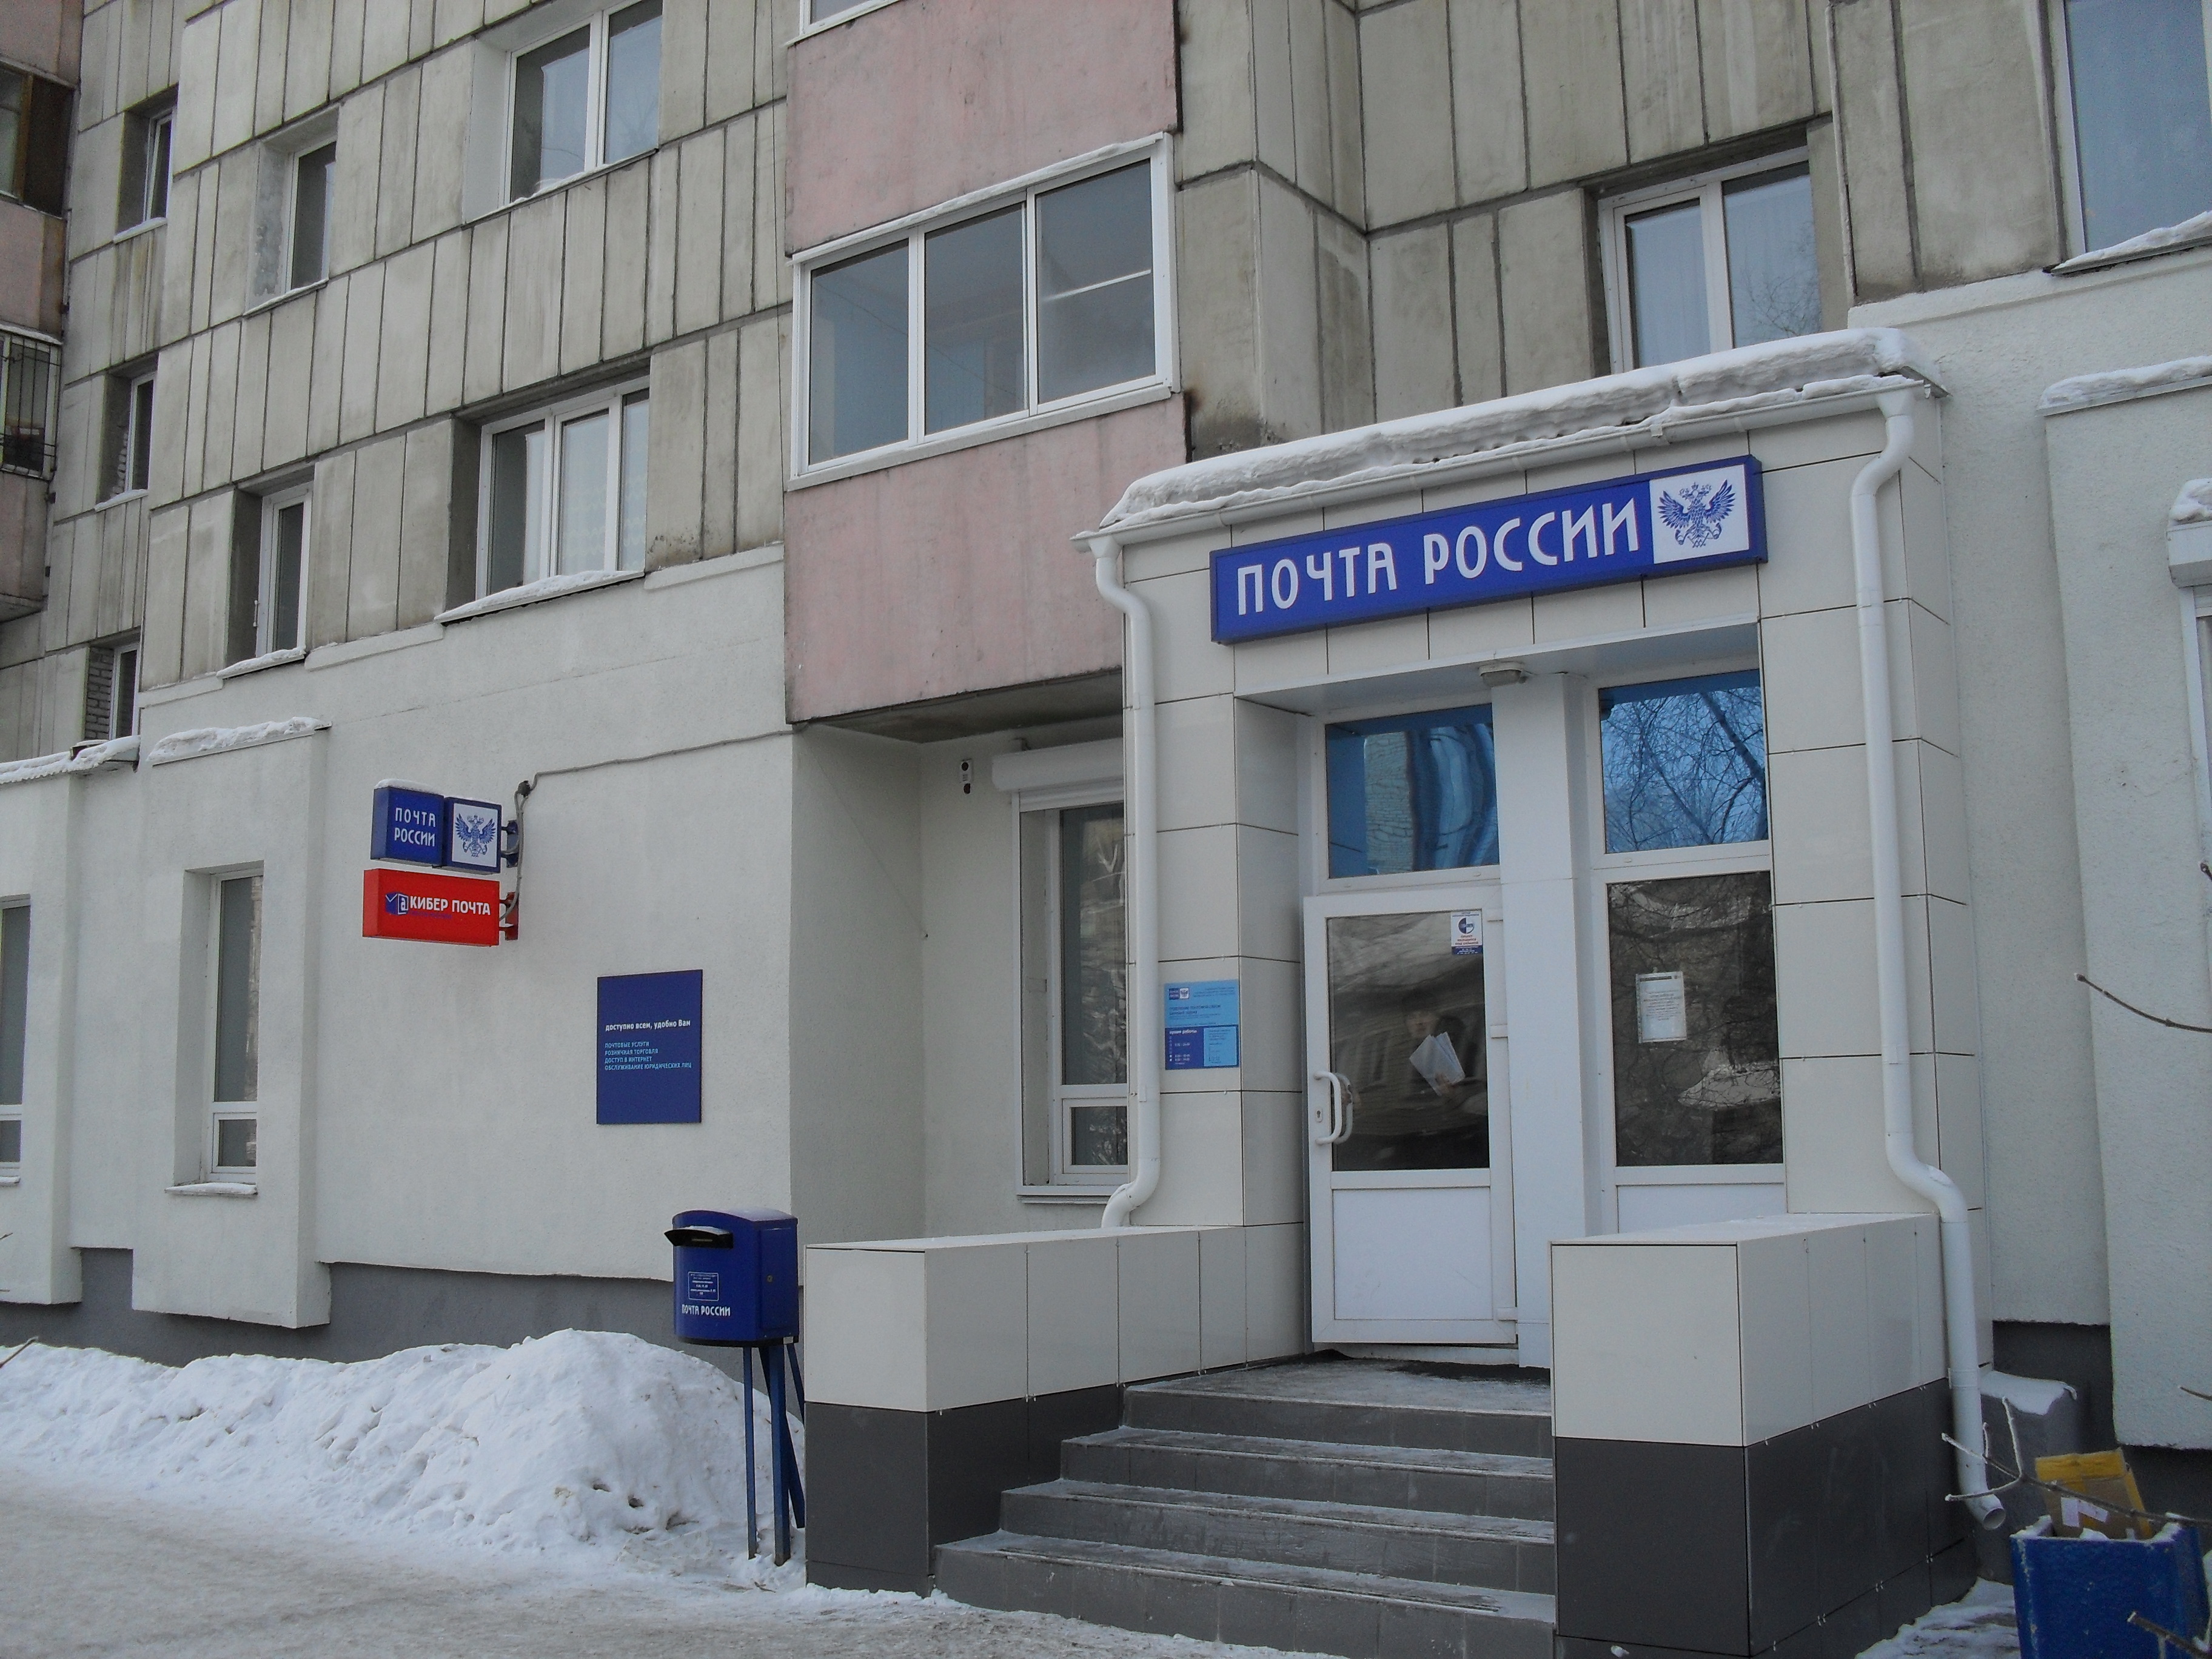 ВХОД, отделение почтовой связи 656049, Алтайский край, Барнаул